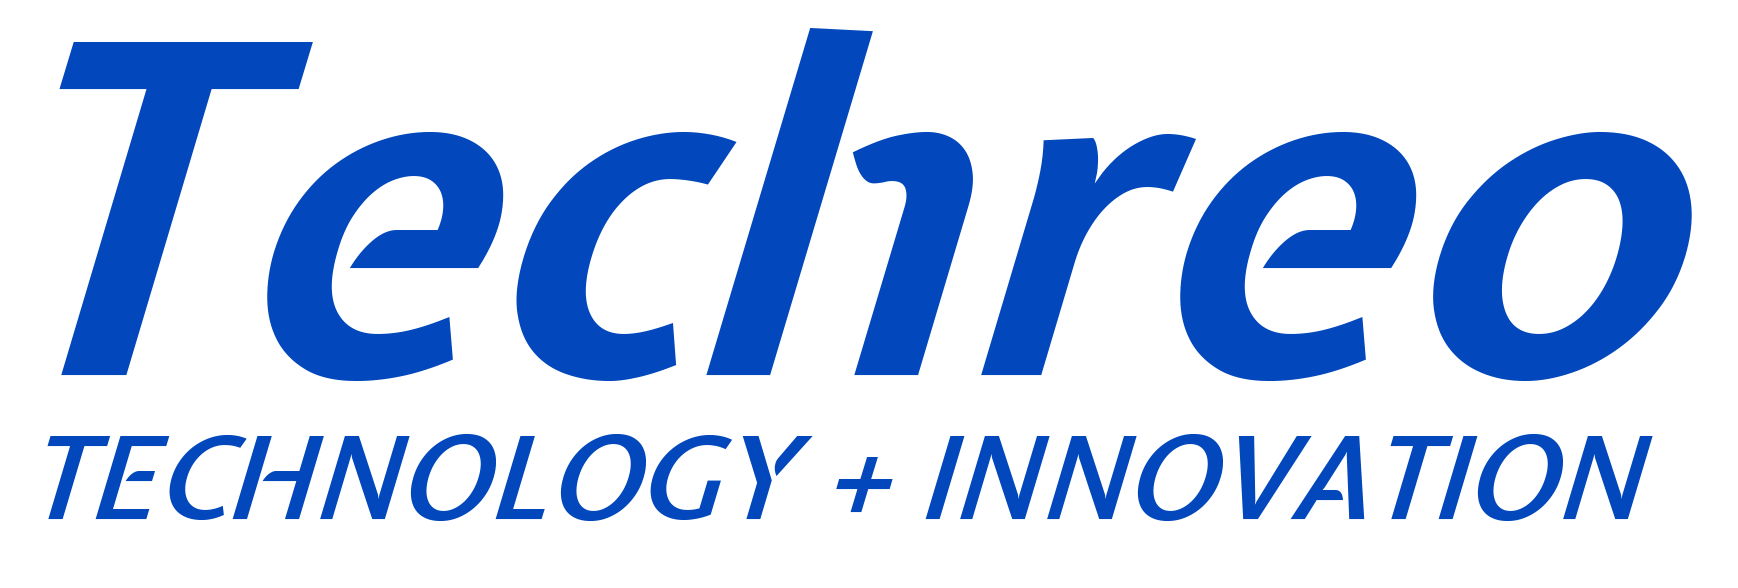 Techreo blue logo